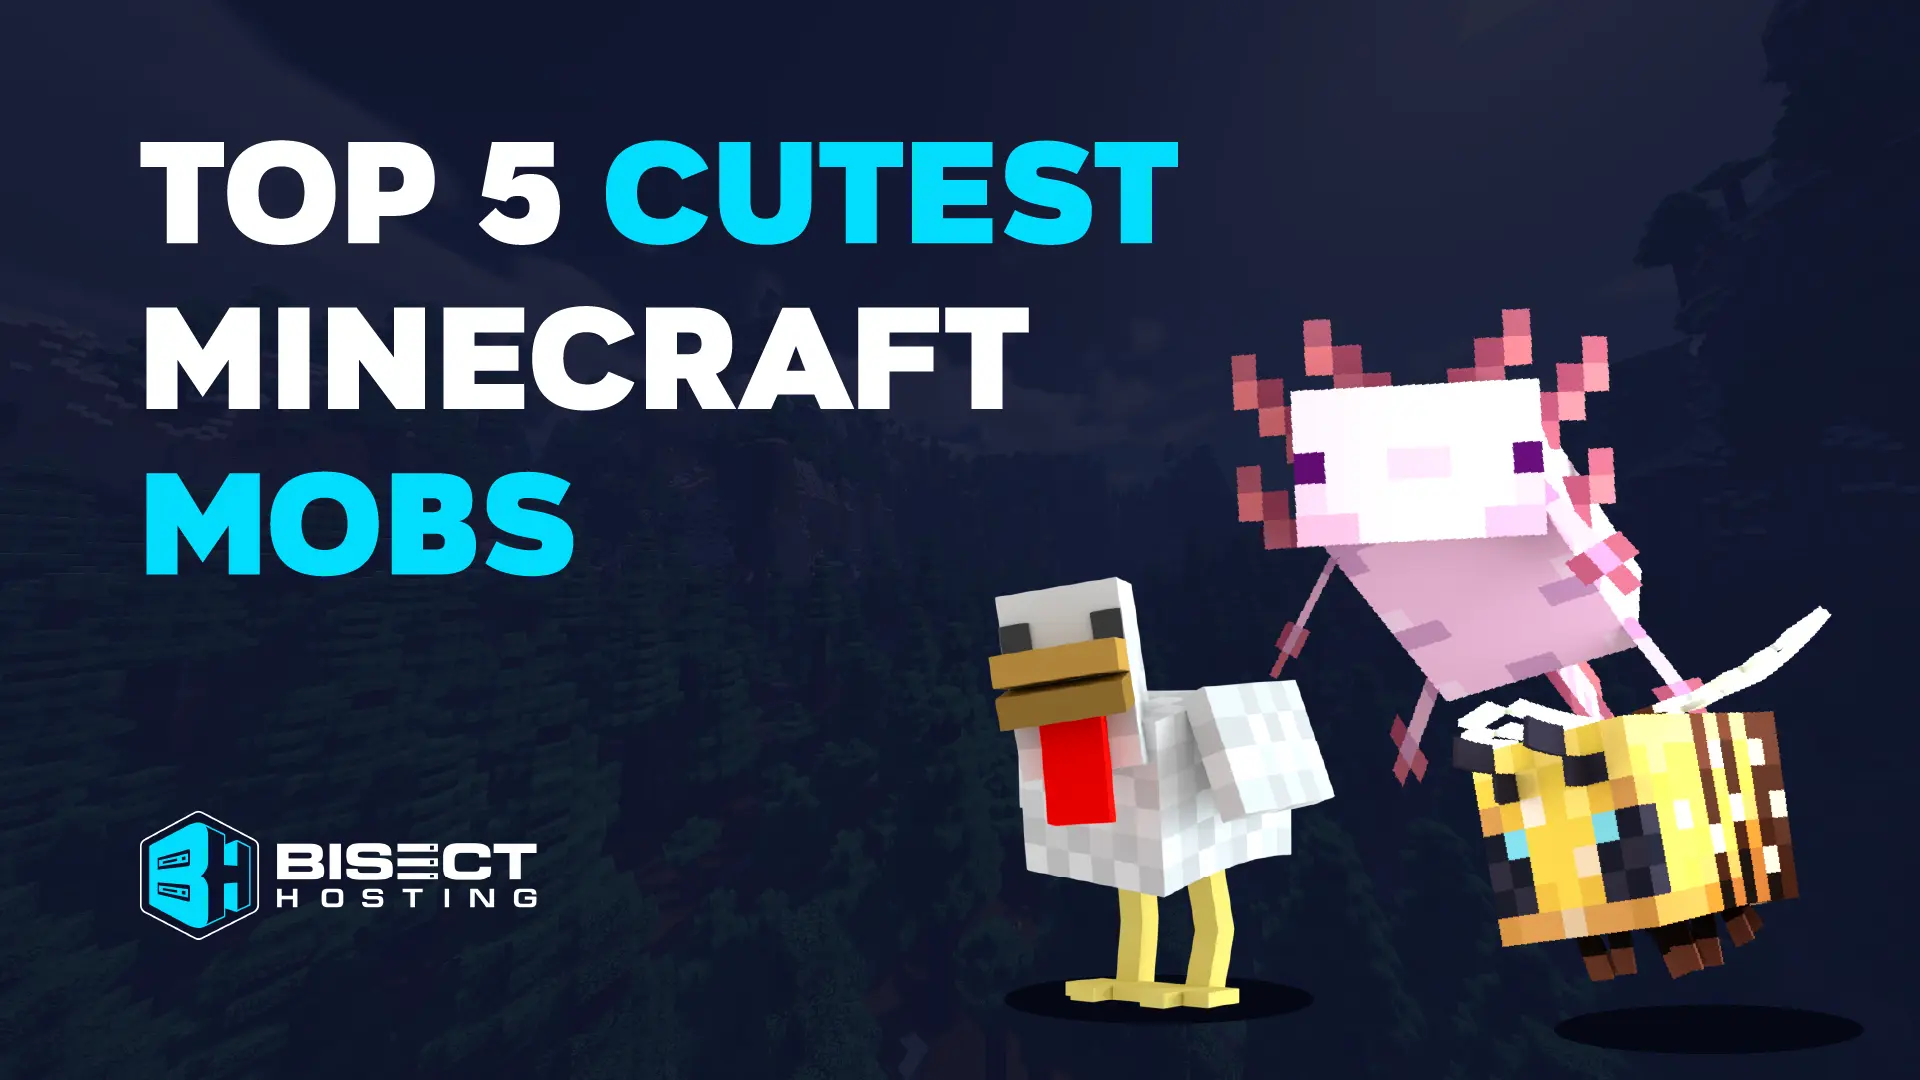 Top 5 Cutest Minecraft Mobs